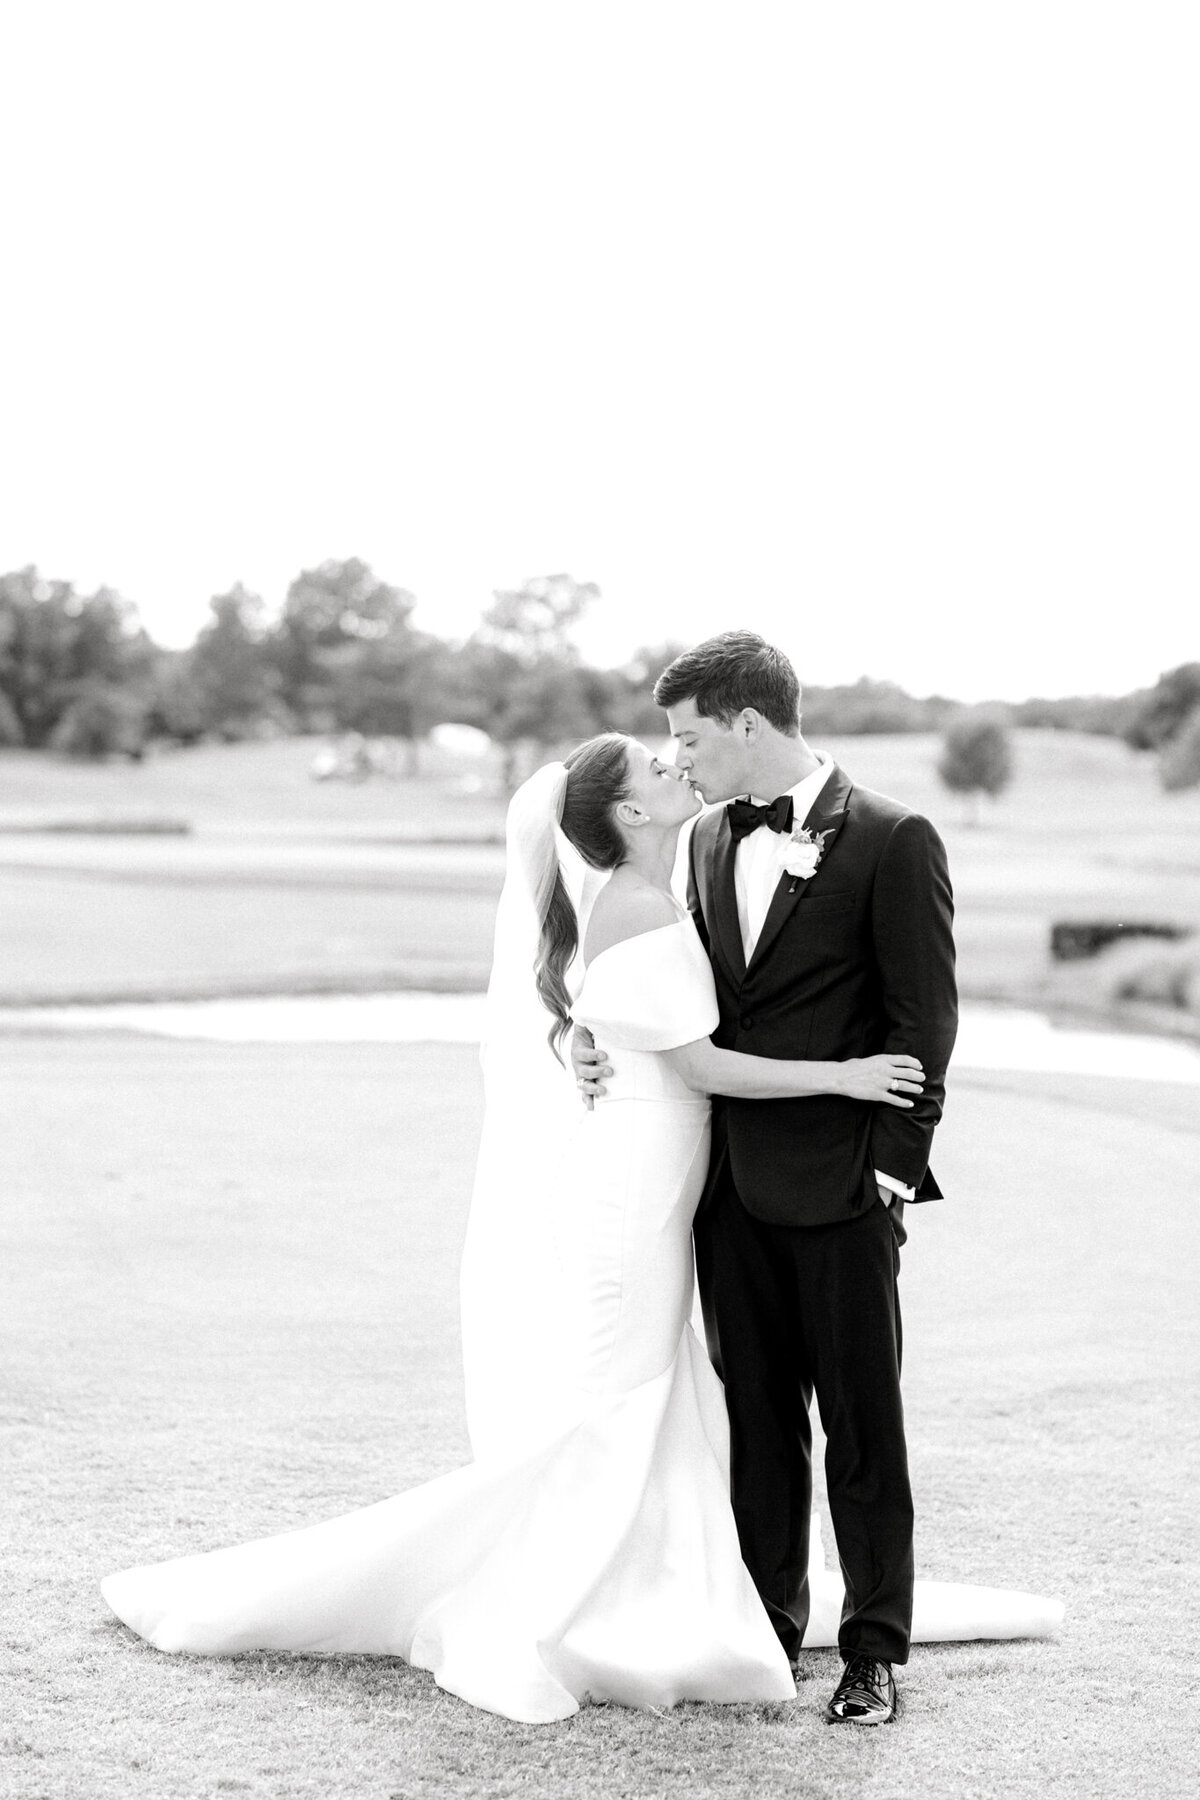 Annie & Logan's Wedding | Dallas Wedding Photographer | Sami Kathryn Photography-143